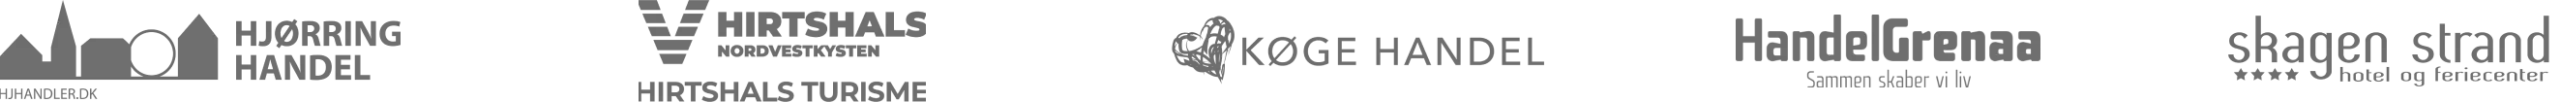 Logogroup-comp